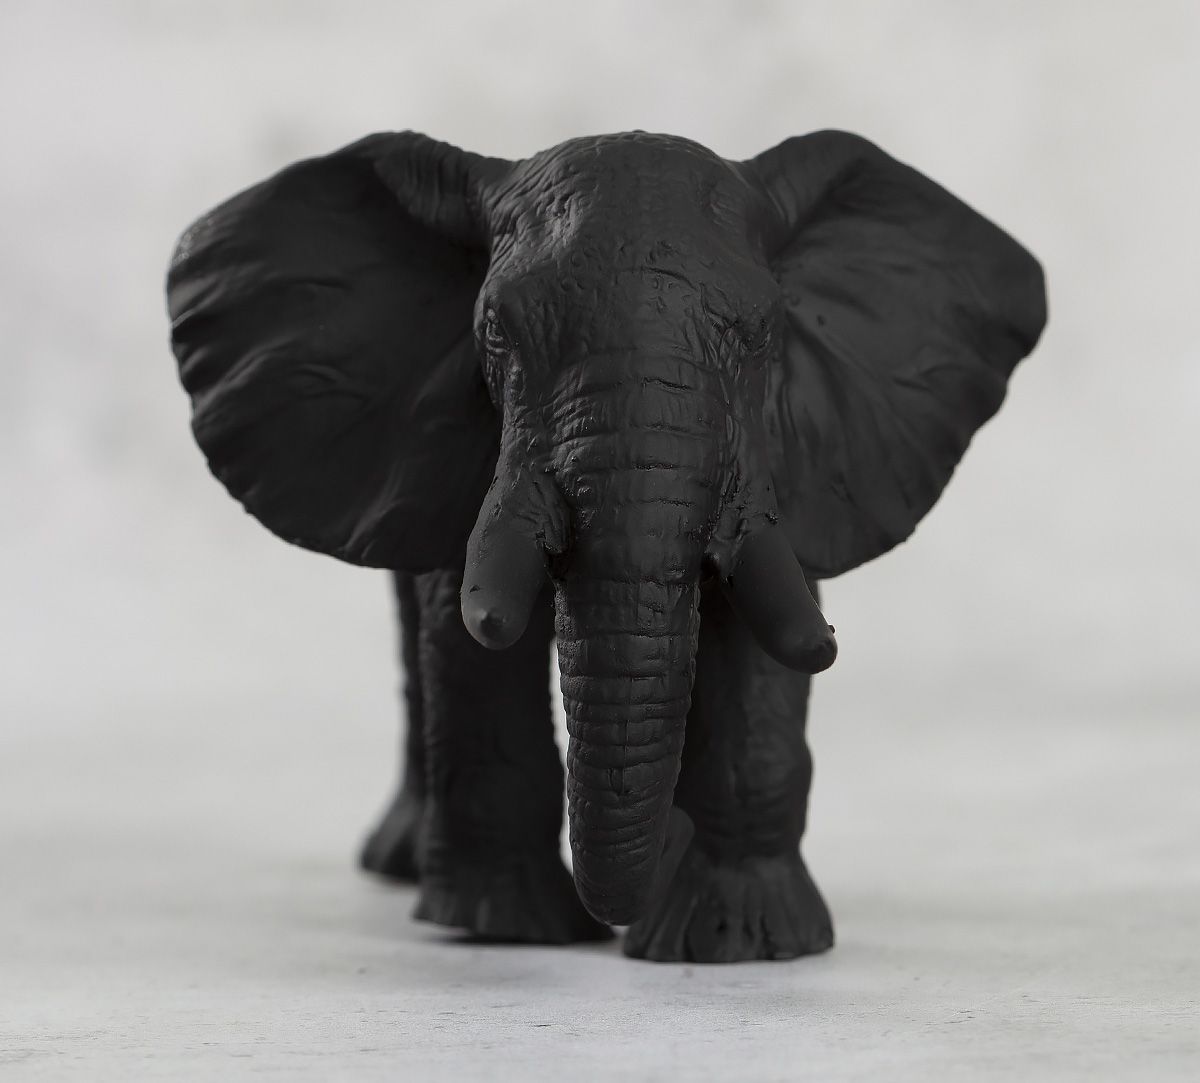 https://indiacircus.com/pub/media/catalog/product/cache/1/image/e9c3970ab036de70892d86c6d221abfe/i/n/india-circus-black-baby-elephant-figurine-56140000sd00155-1.jpg